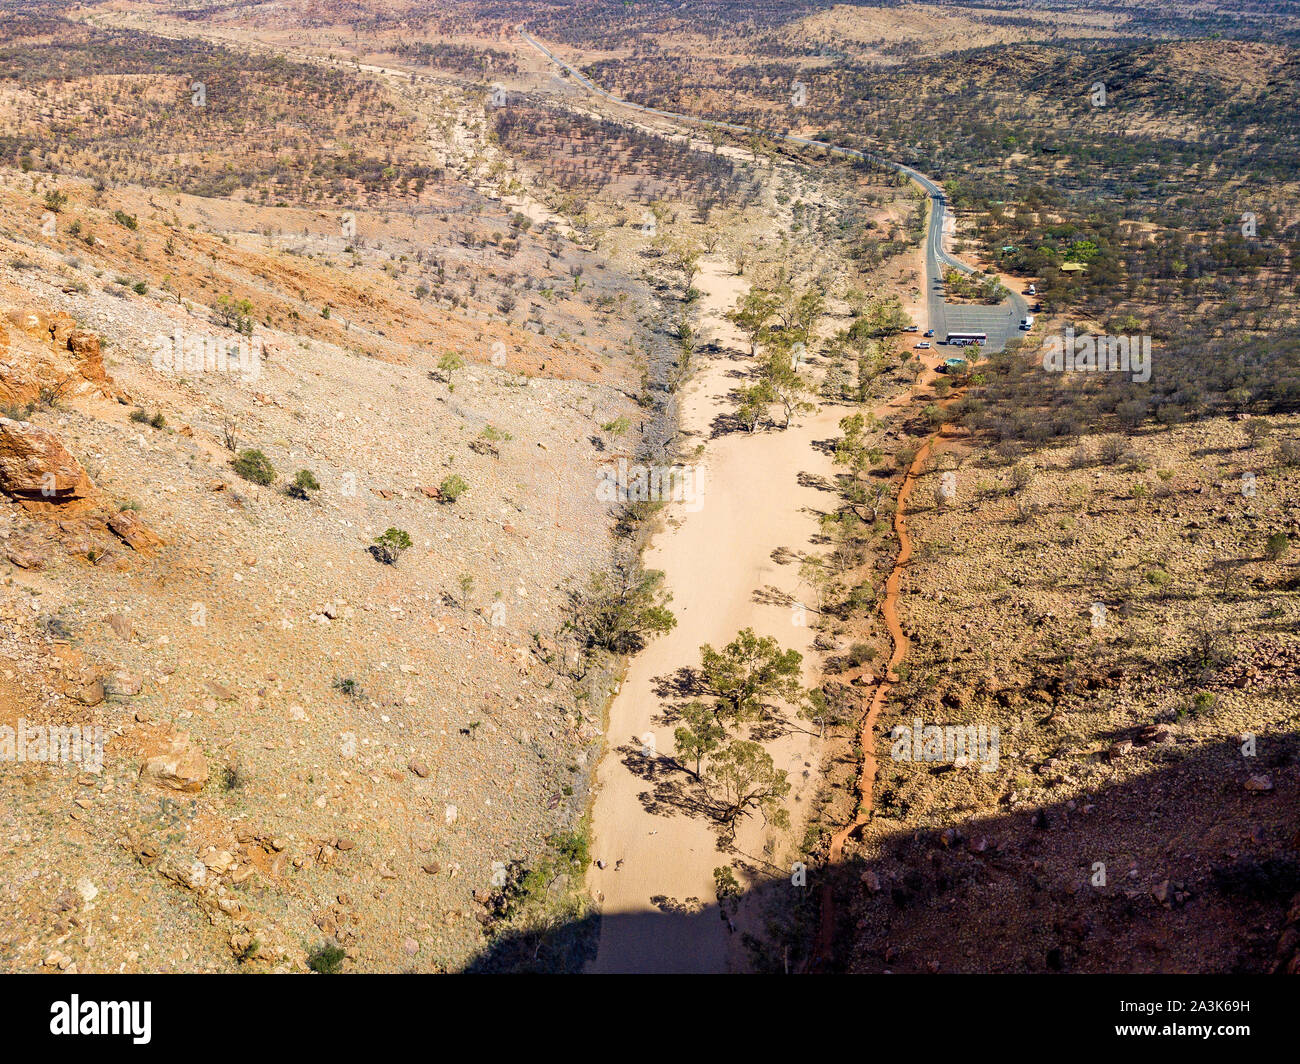 Vue aérienne de Simpsons Gap et environs dans le Territoire du Nord, Australie. Banque D'Images